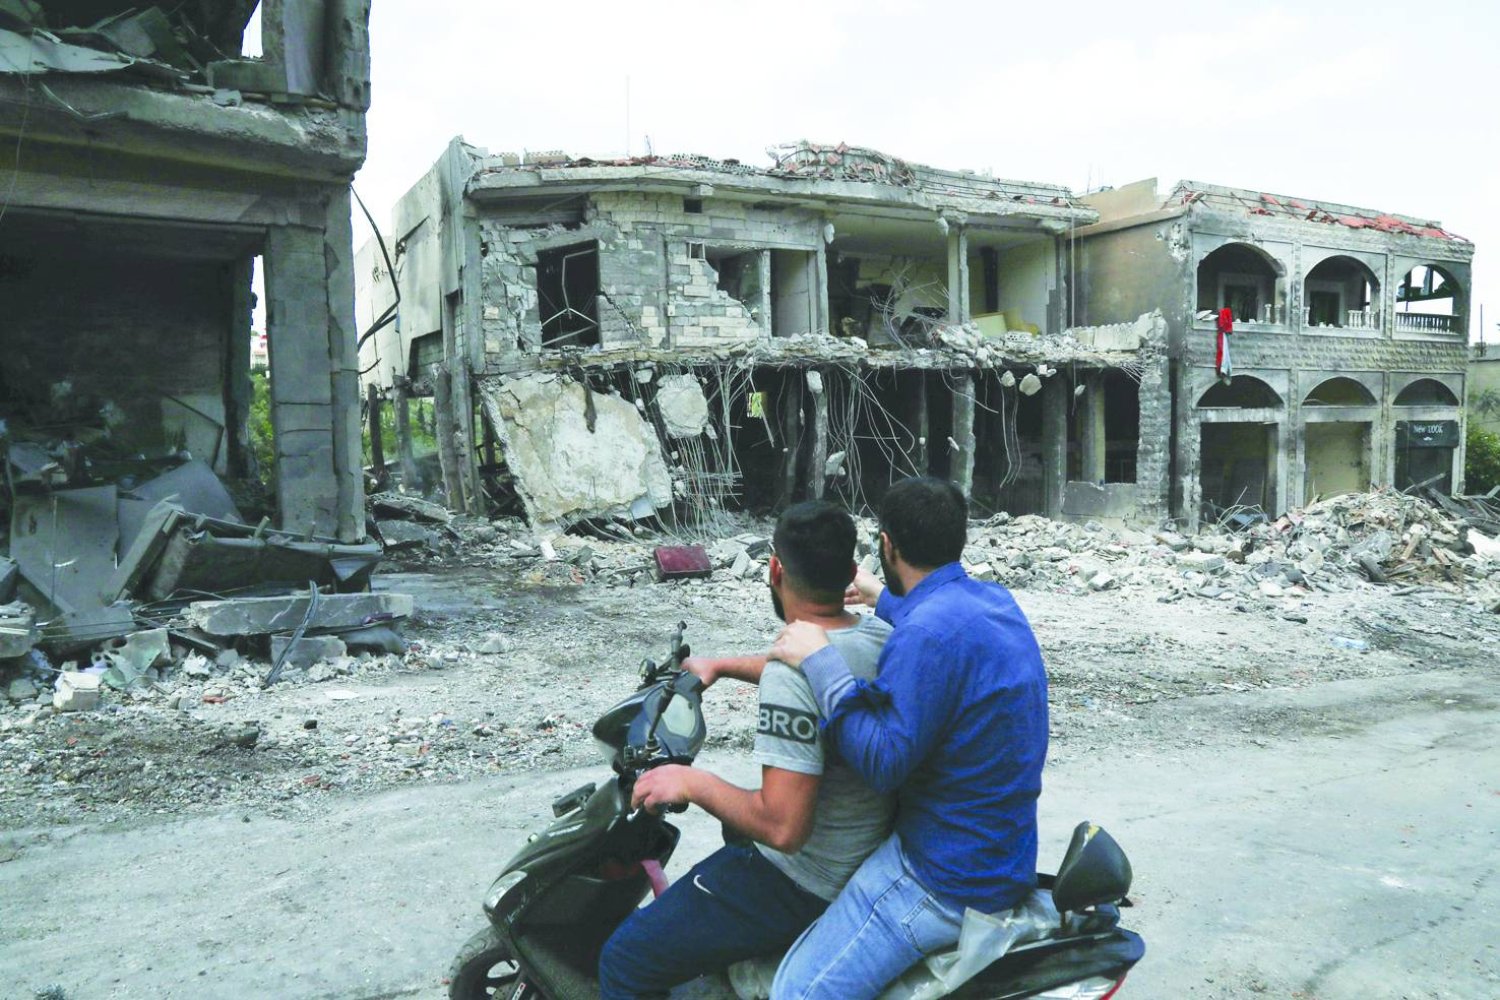 
رجلان على متن دراجة نارية يعاينان مباني متضررة بفعل غارة إسرائيلية في قرية ميس الجبل الحدودية بجنوب لبنان أمس (أ.ف.ب)